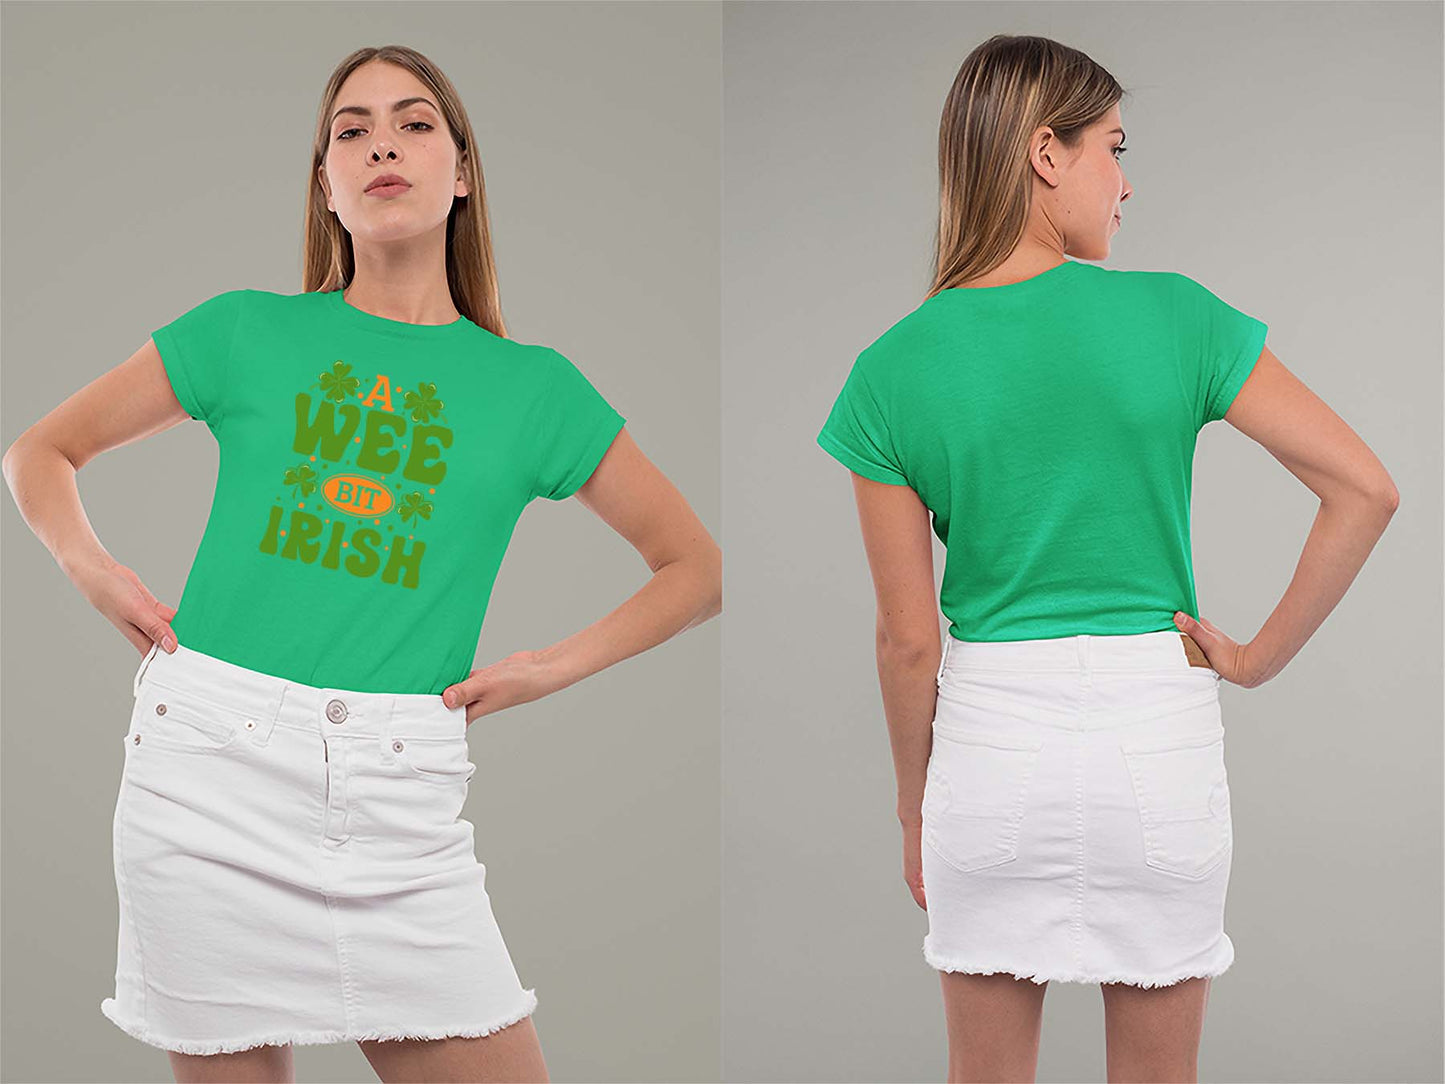 A Wee Bit Irish Ladies Crew (Round) Neck Shirt Small Irish Green